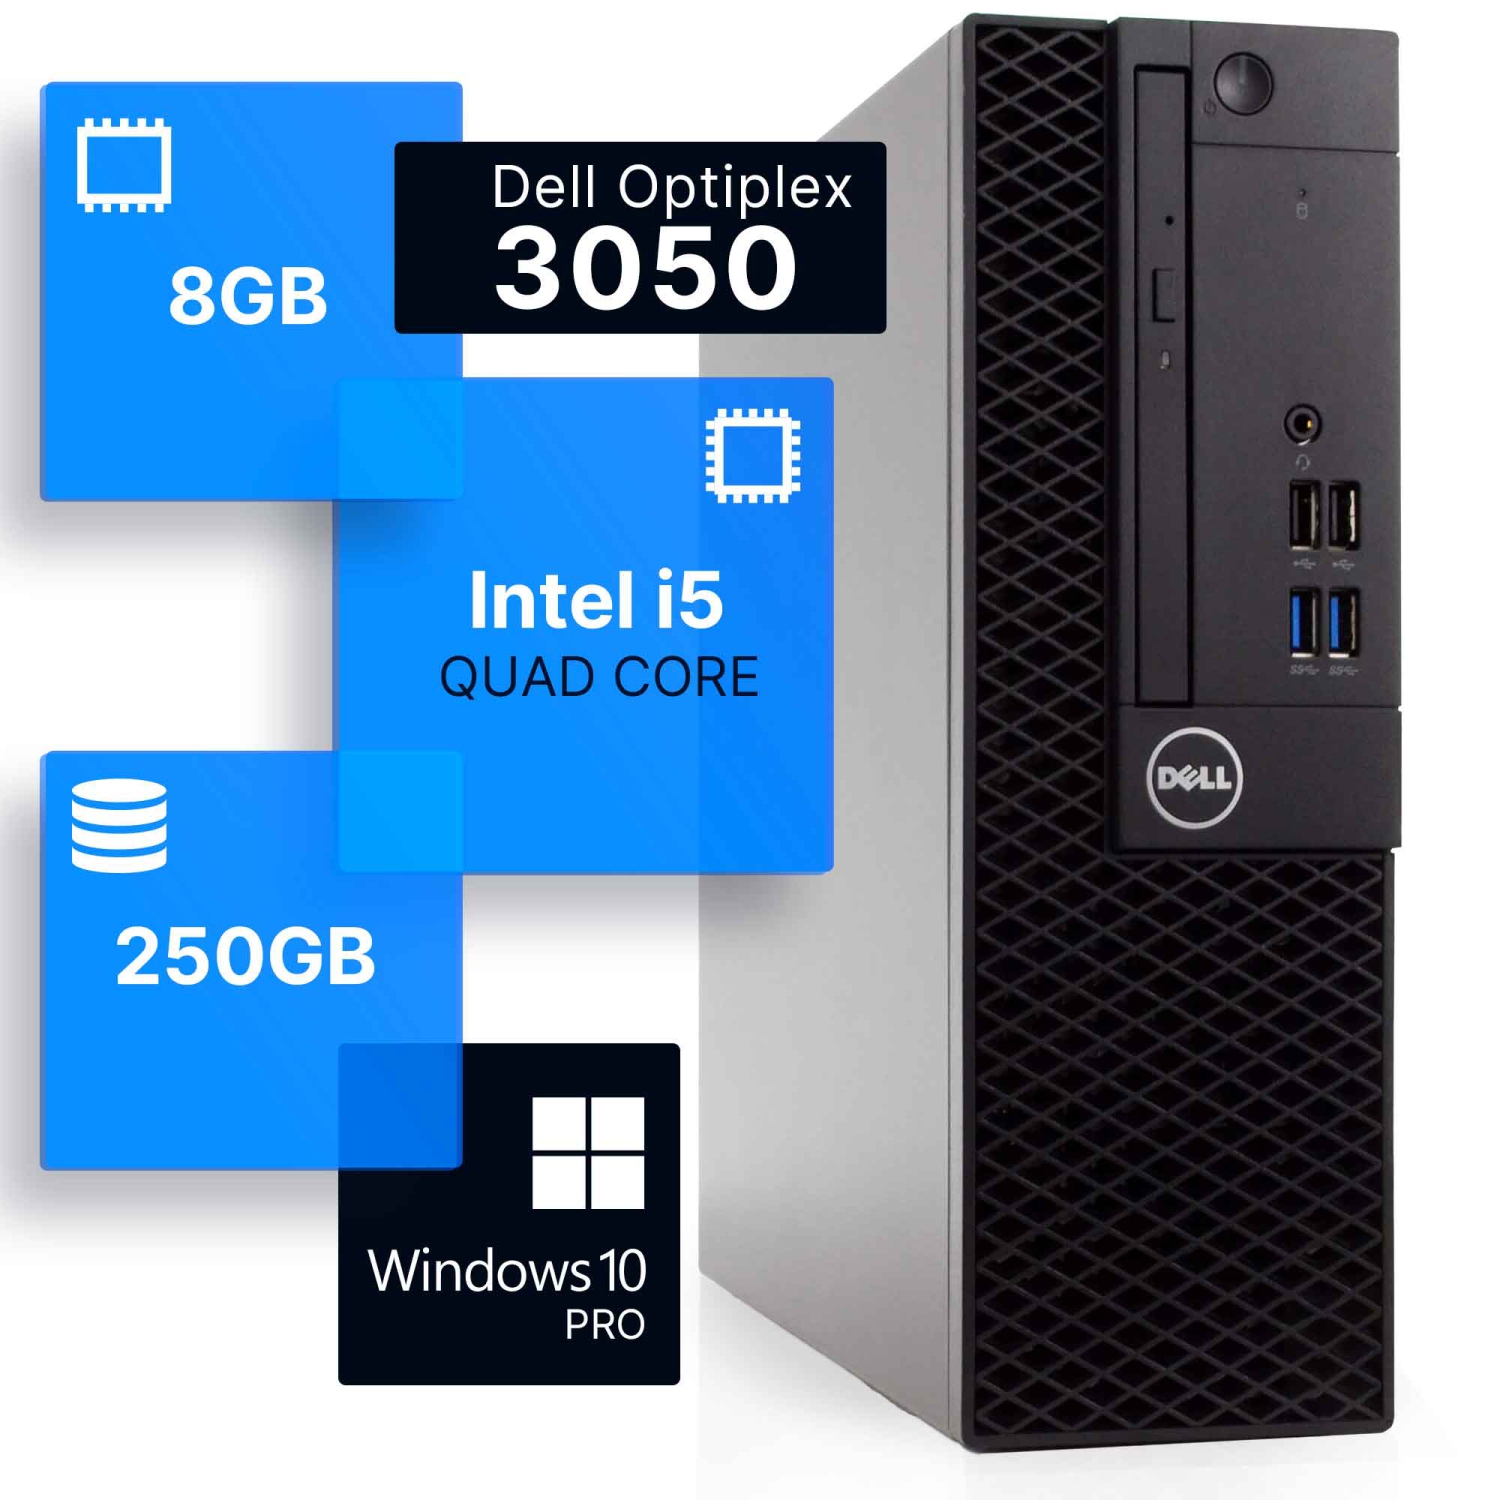 Refurbished (Good) - Dell Optiplex 3050 Desktop Computer | Quad Intel i5 (3.2) Gen 7 | 8GB DDR4 RAM | 250GB SSD | Windows 10 Professional | Built-in Wi-Fi AX200